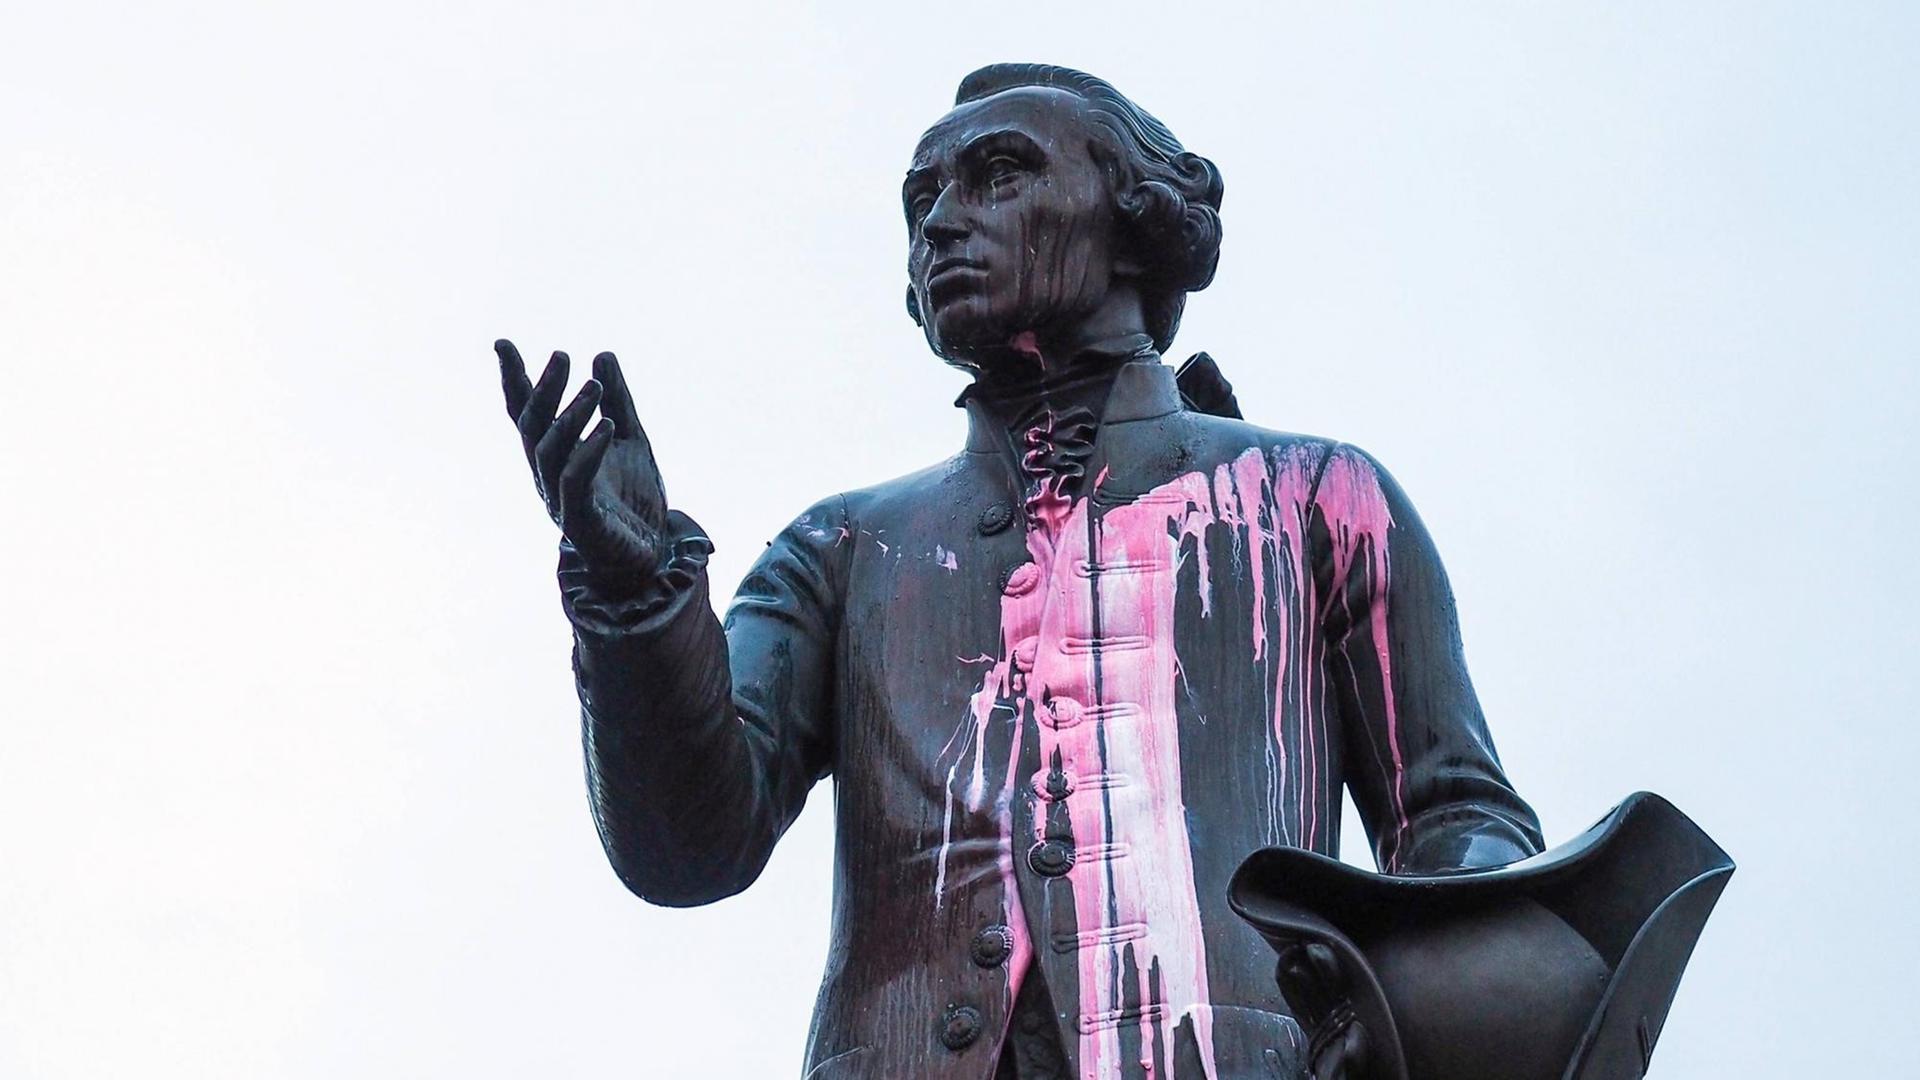 27.11.2018: Die Statue Immanuel Kants in Kaliningrad ist mit pinker Farbe beschmiert - Grund für die Aktion waren deutschfeindliche Ressentiments.